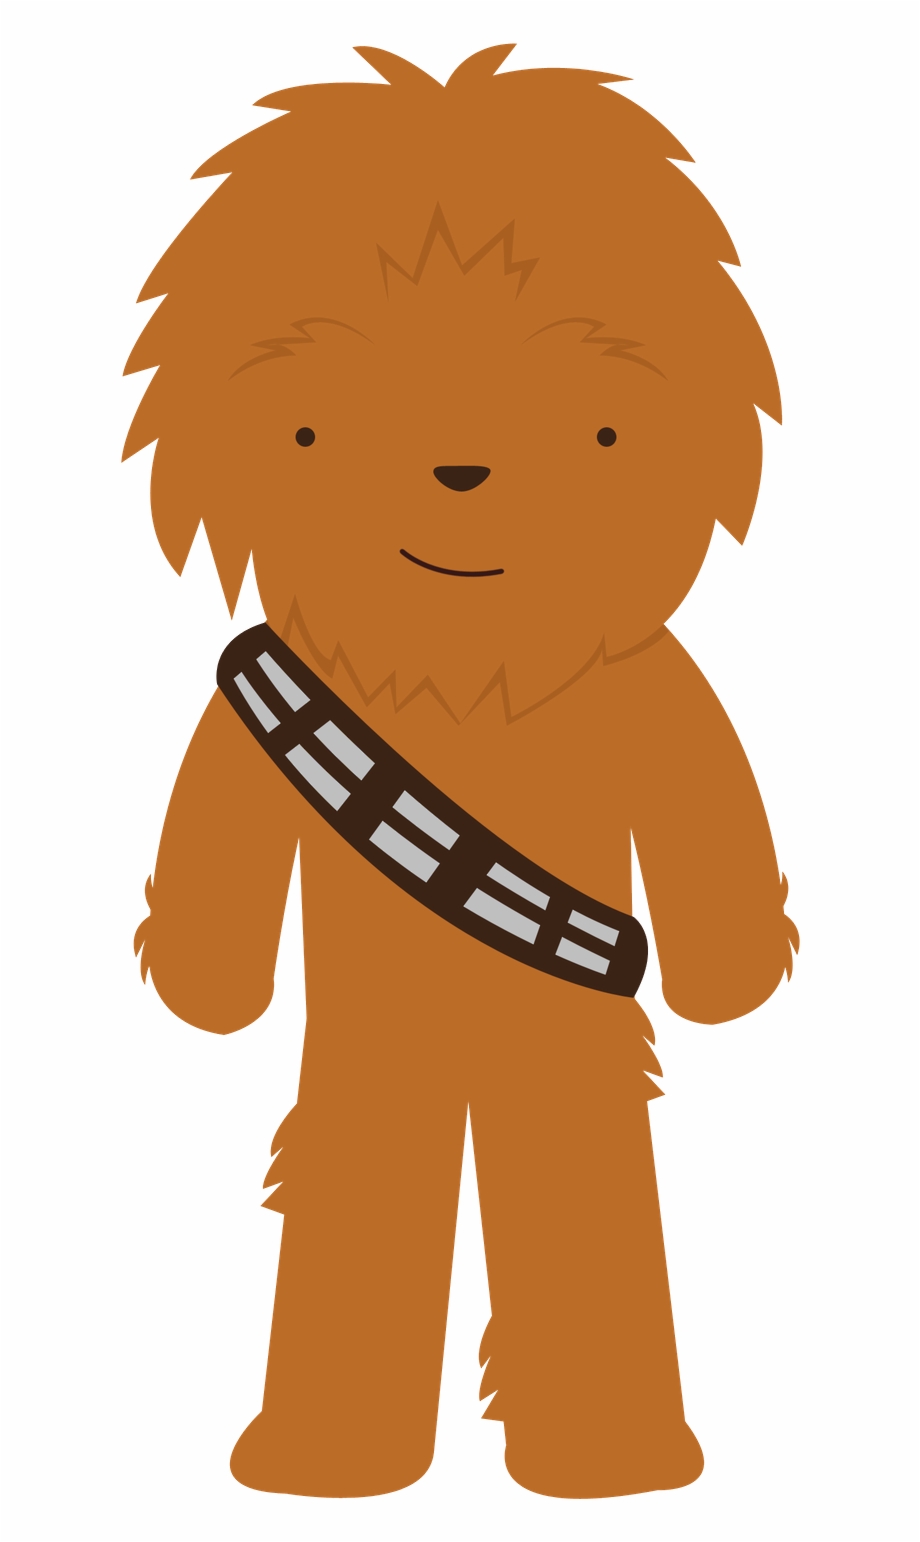 Star Wars Cute Chewbacca Clipart